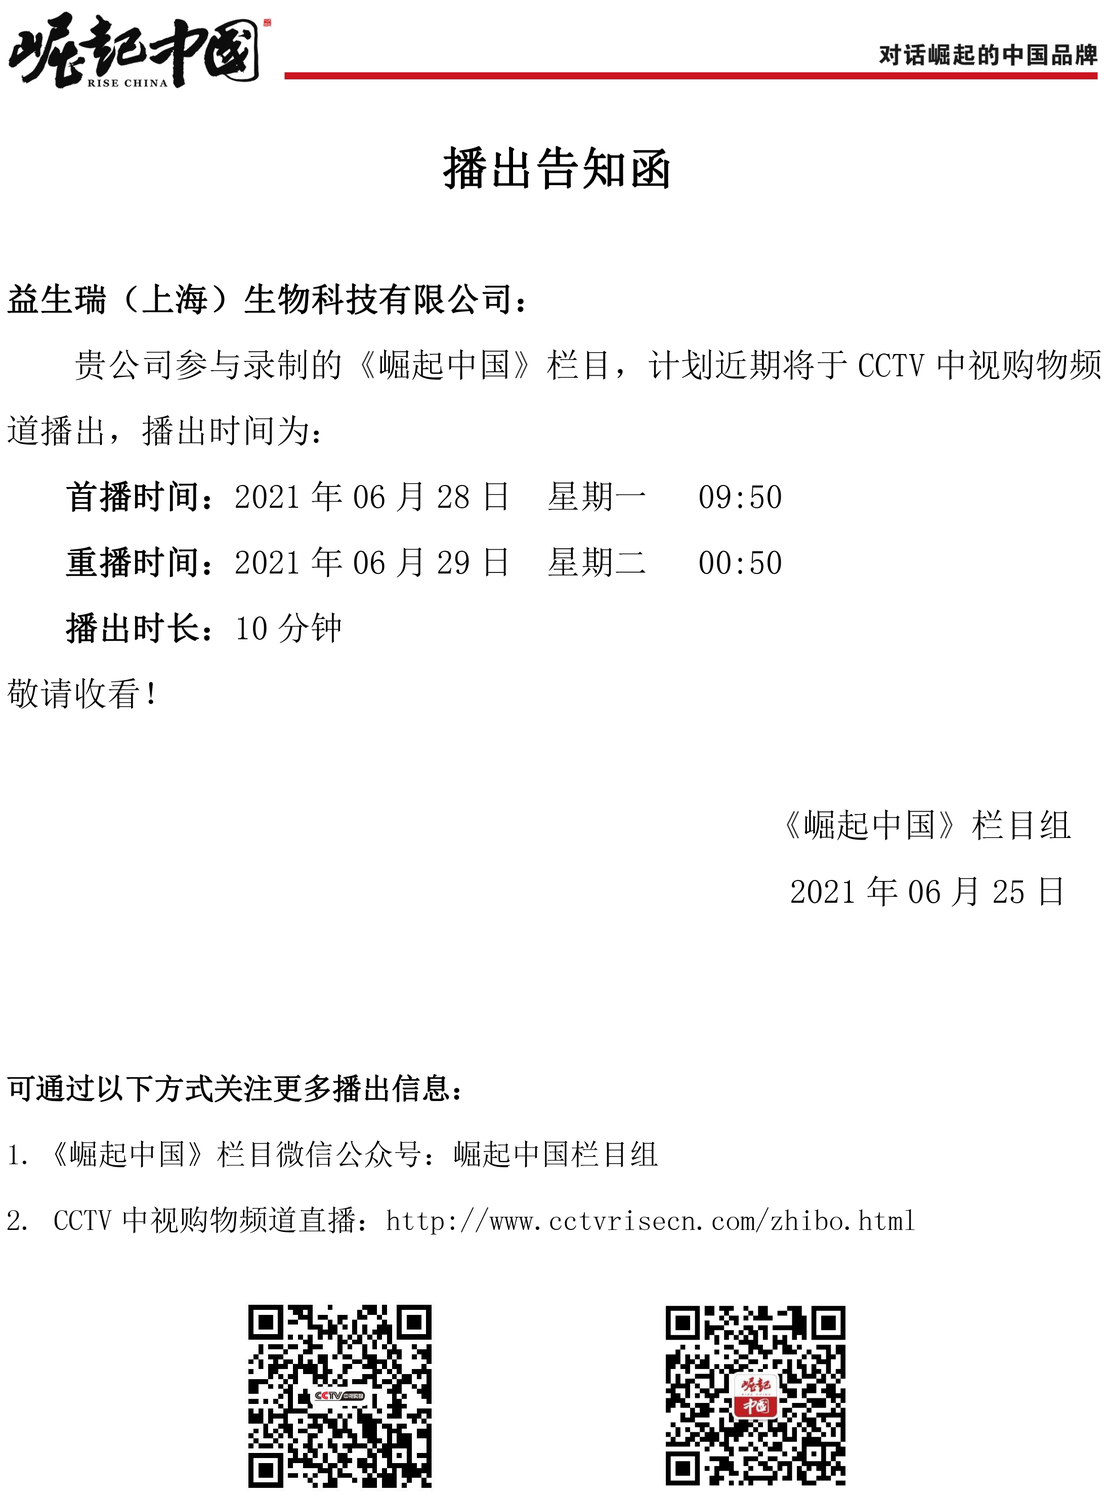 澳门威尼克斯人网站（上海）生物科技有限公司 崛起中国播出通知函(1).jpg